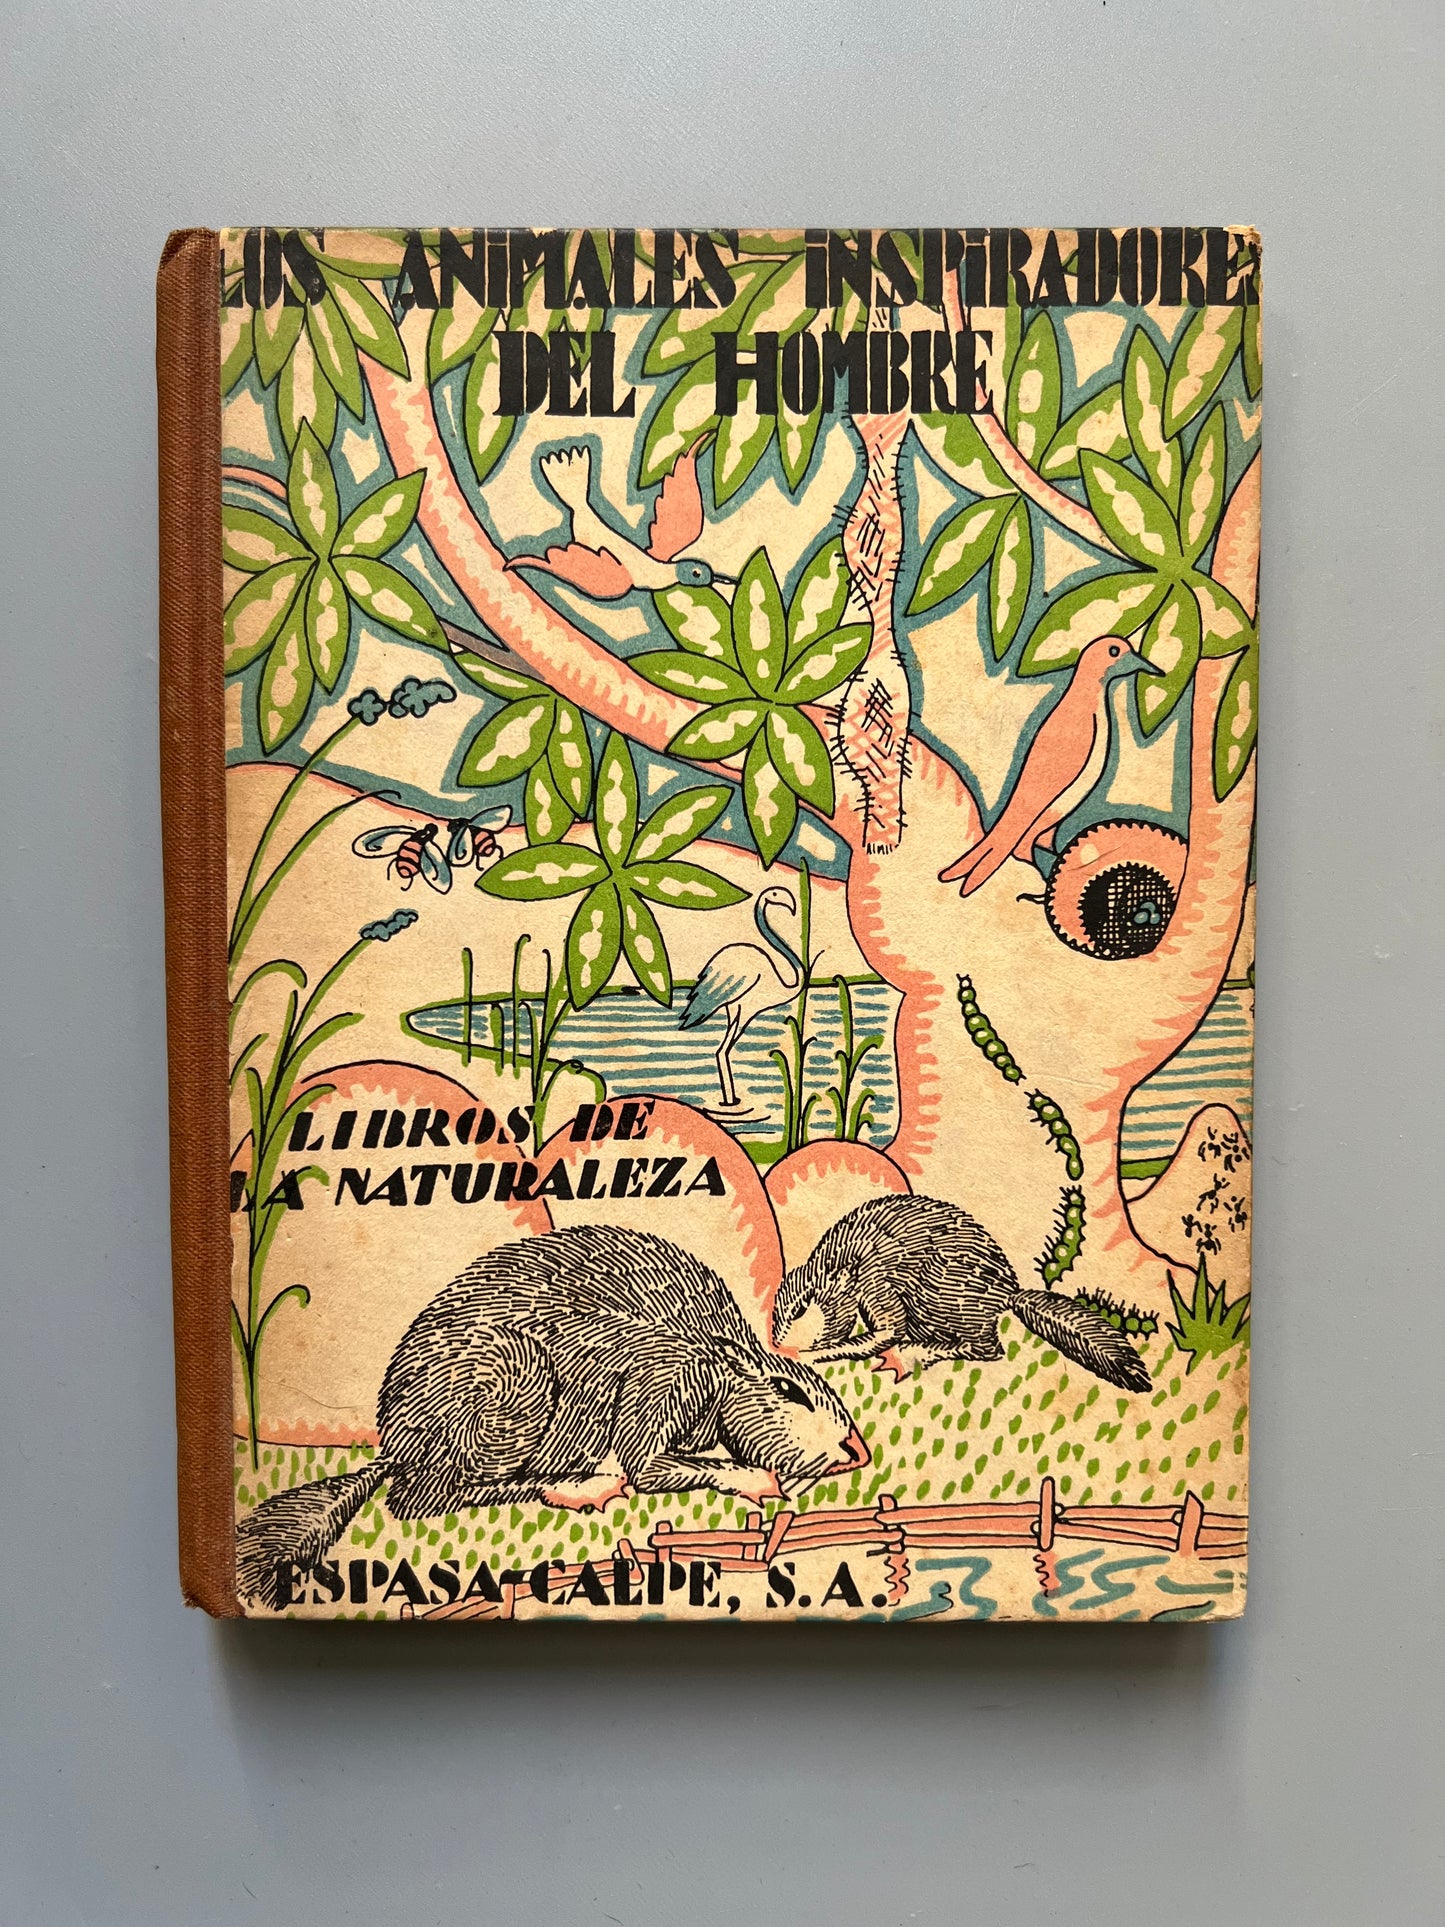 Animales inspiradores del hombre, Angel Cabrera - Espasa-Calpe, 1929